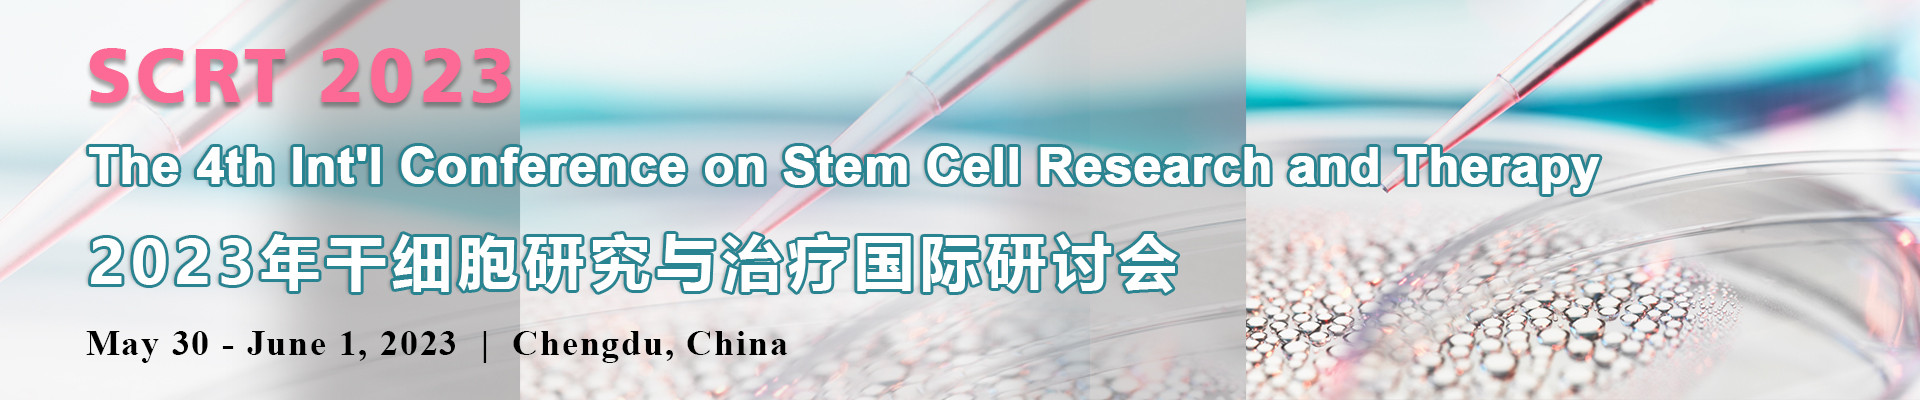 第四届干细胞研究与治疗国际研讨会(SCRT 2023)